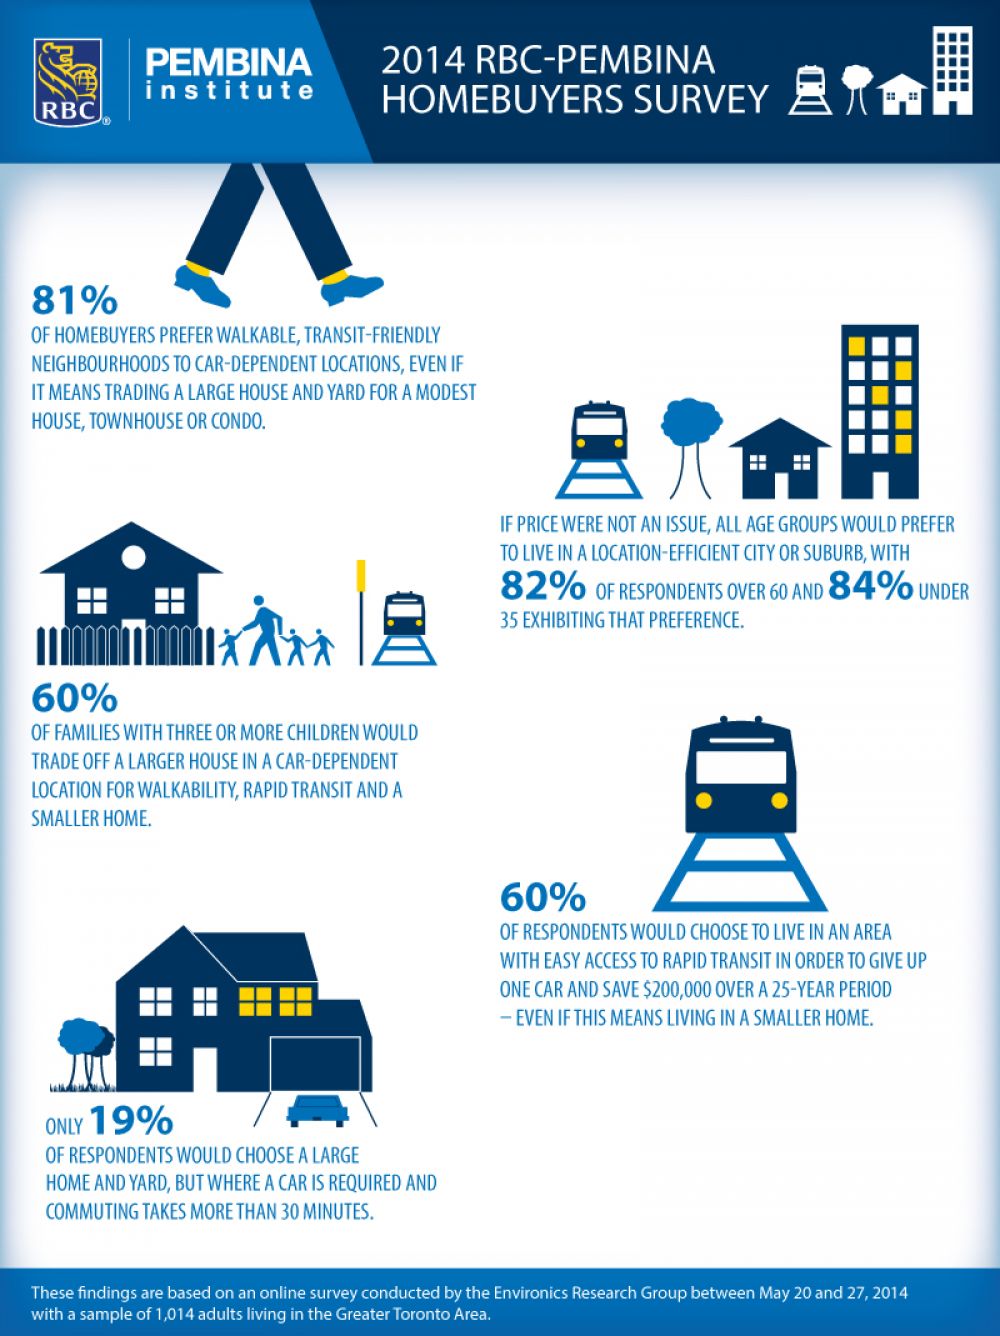 Infographic summarizing homebuyer survey results